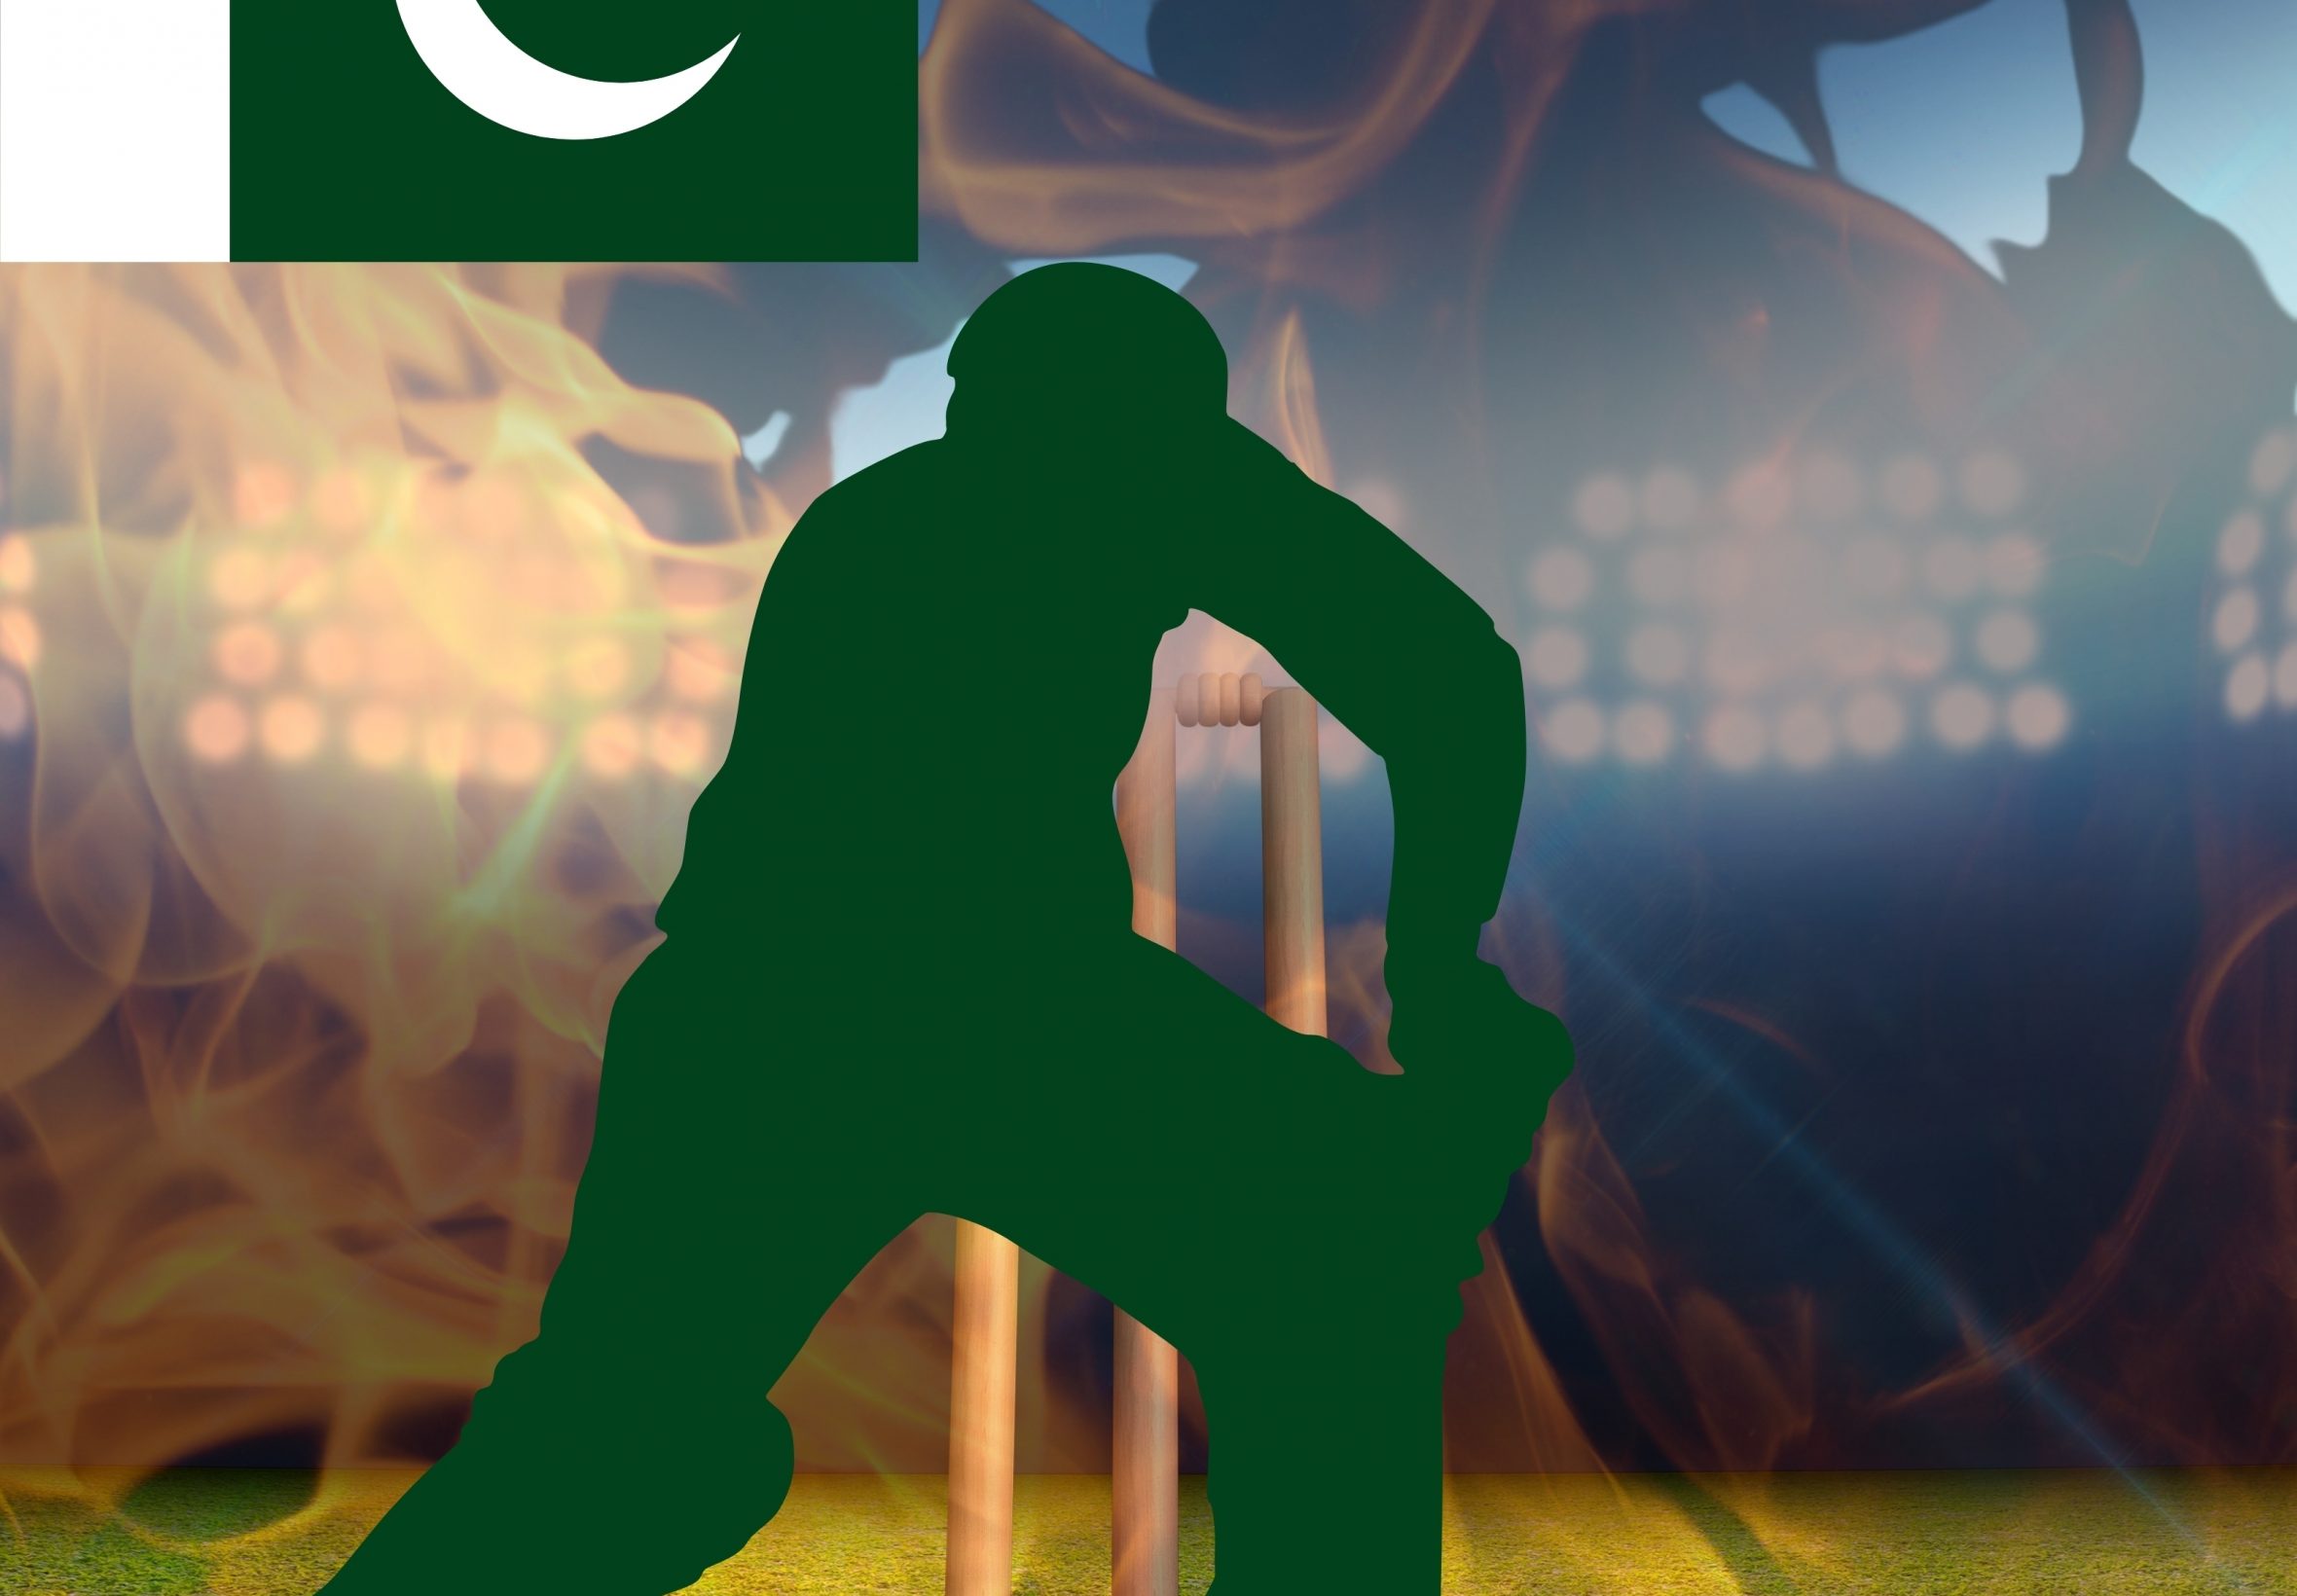 2360x1640 iPad Air wallpaper 4k Pakistan Cricket Stadium iPad Wallpaper 2360x1640 pixels resolution